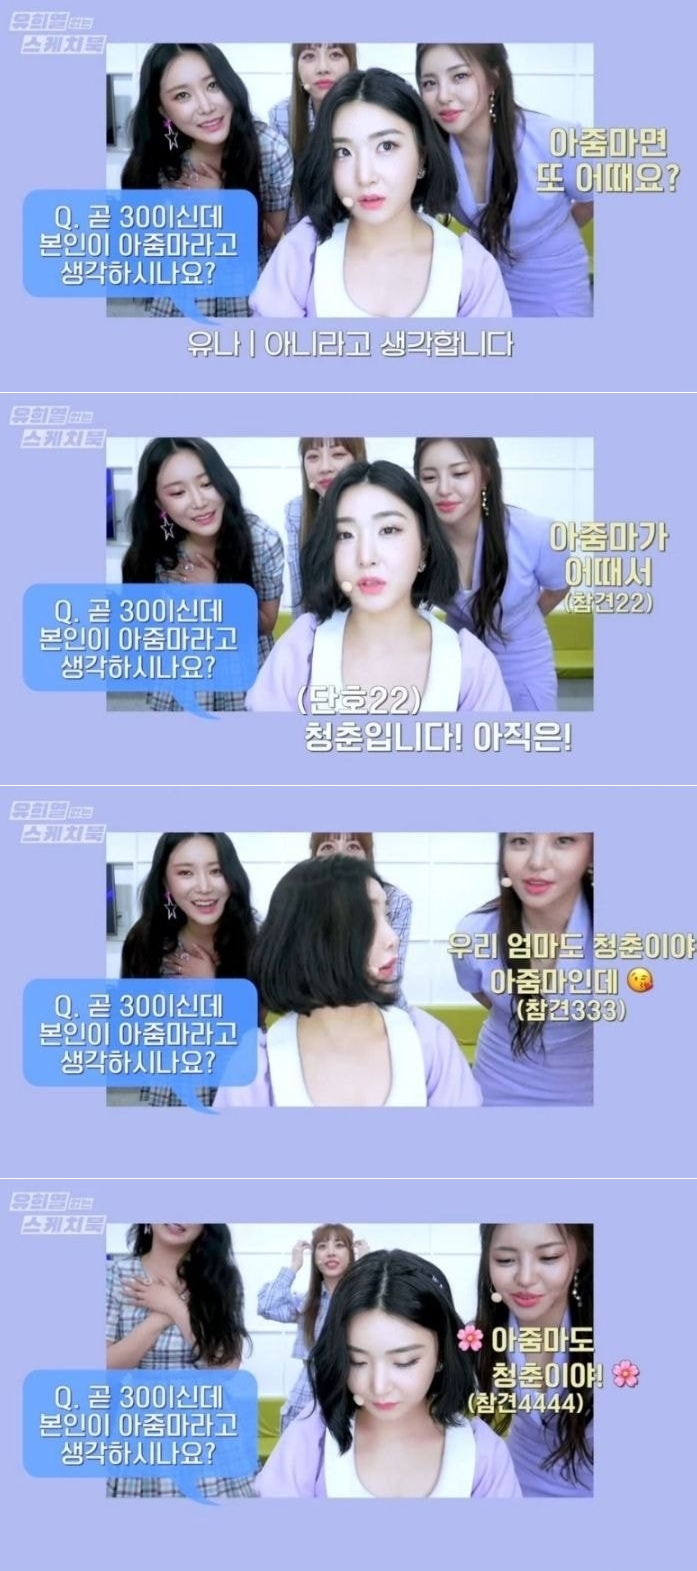 KBS Kpop 유튜브 채널 ‘유희열 없는 스케치북’ 논란